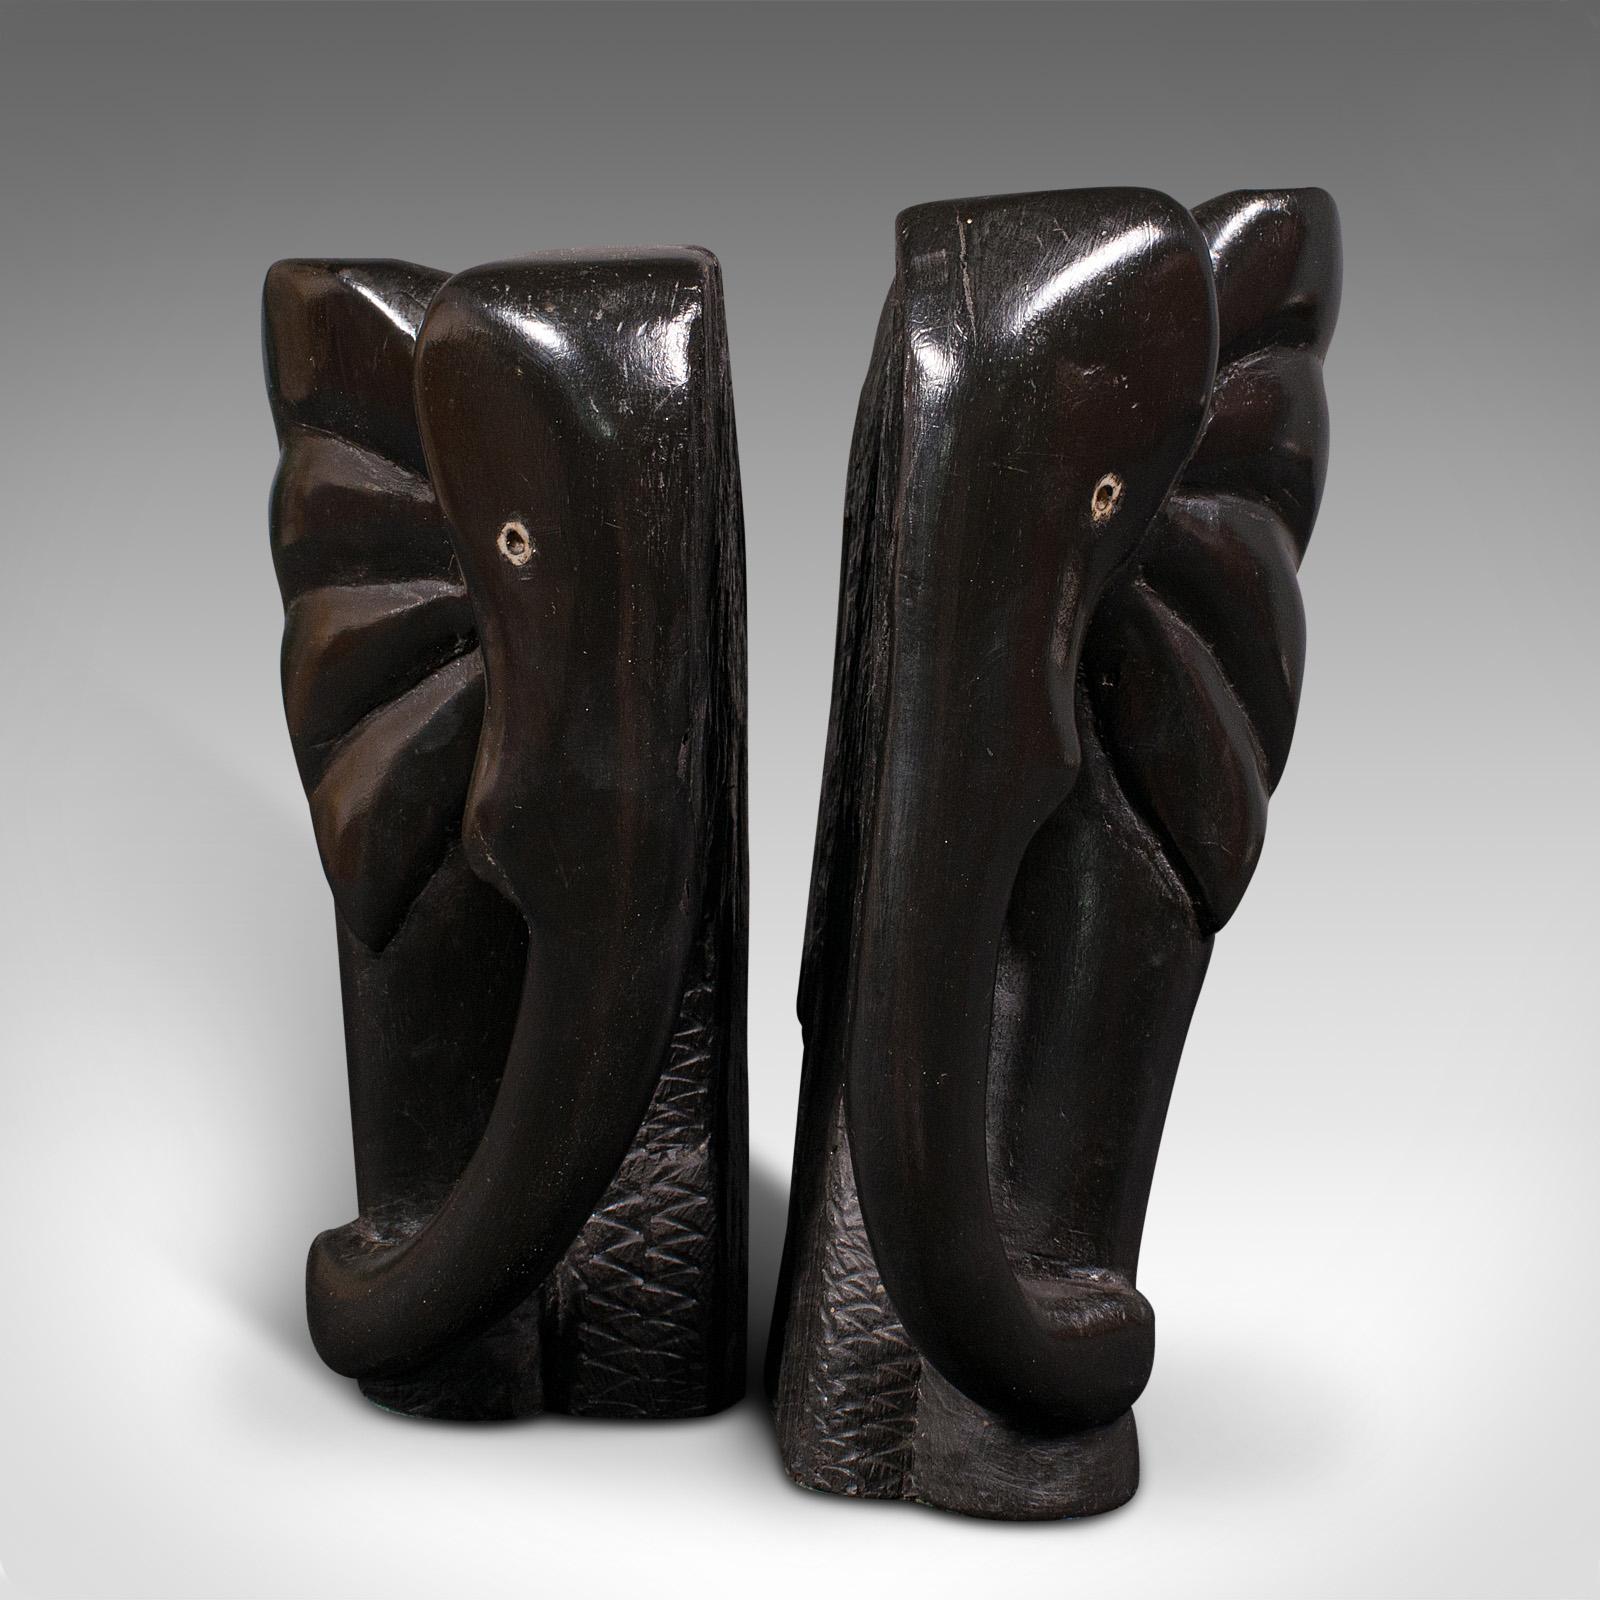 Il s'agit d'une paire de serre-livres éléphants sculptés à la main. Un repose-livre décoratif en ébène africain, datant de la période victorienne, vers 1880.

Merveilleux serre-livres décoratifs à l'aspect charmant.
Présentant une patine vieillie